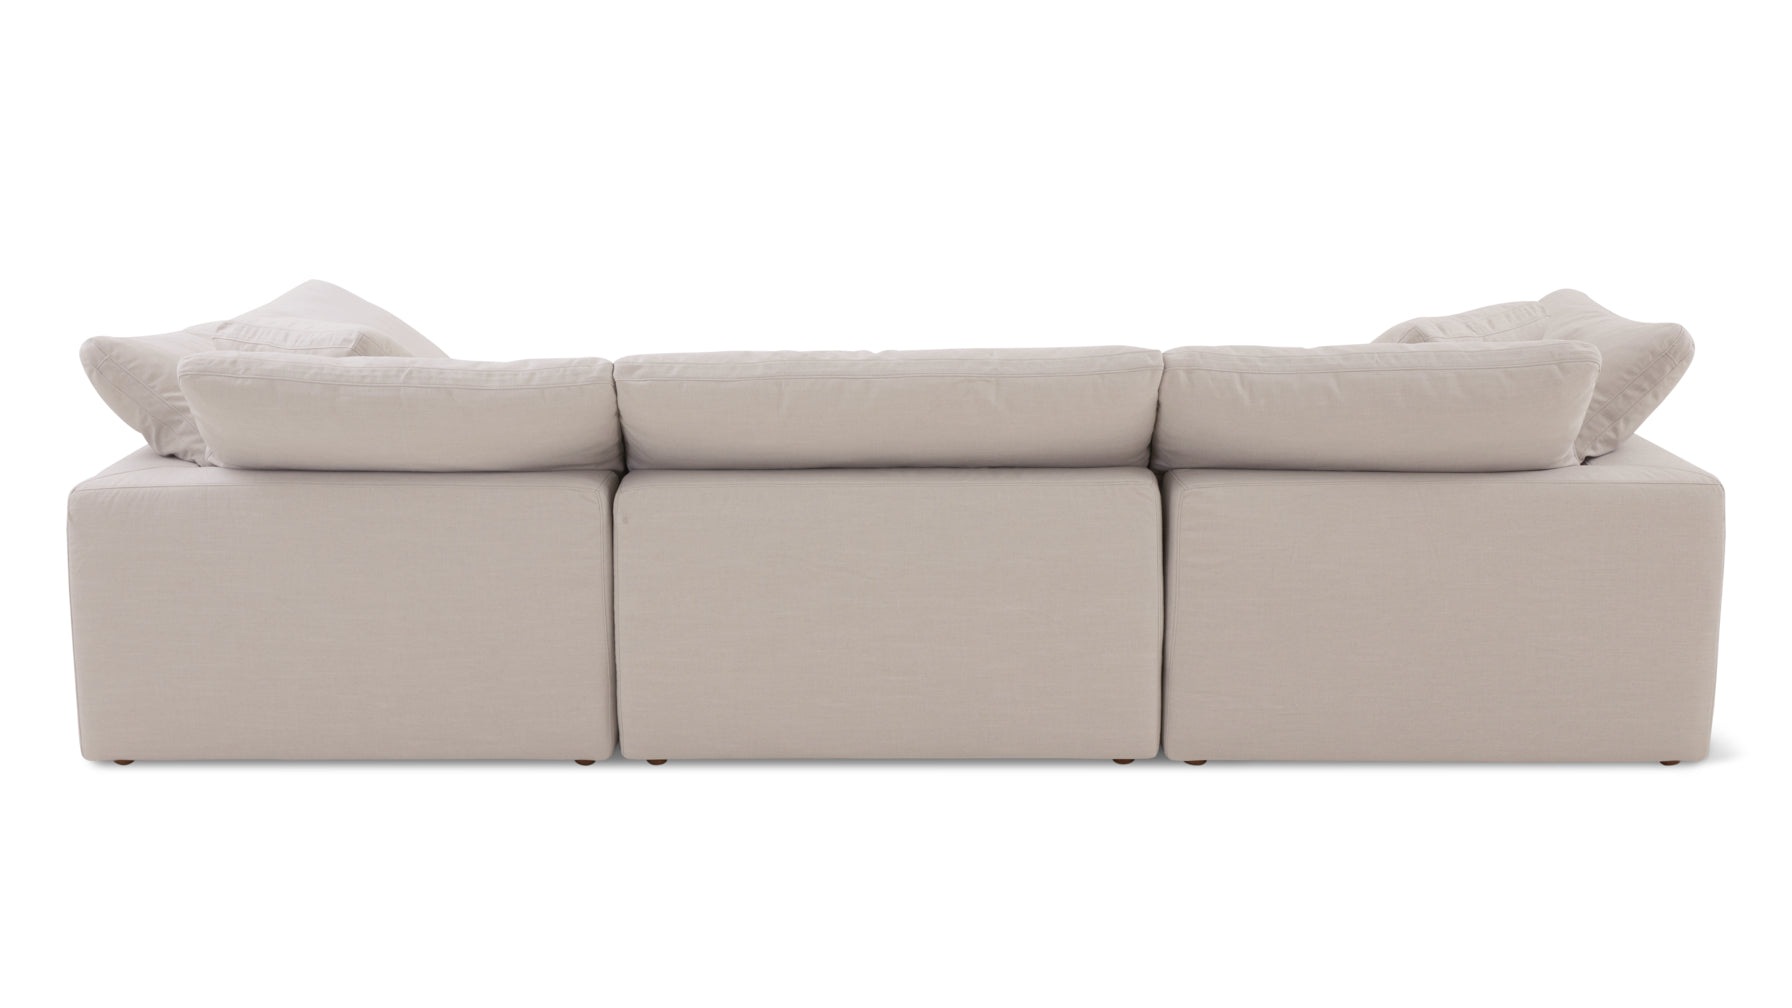 Movie Night™ 3-Piece Modular Sofa, Large, Clay - Image 9